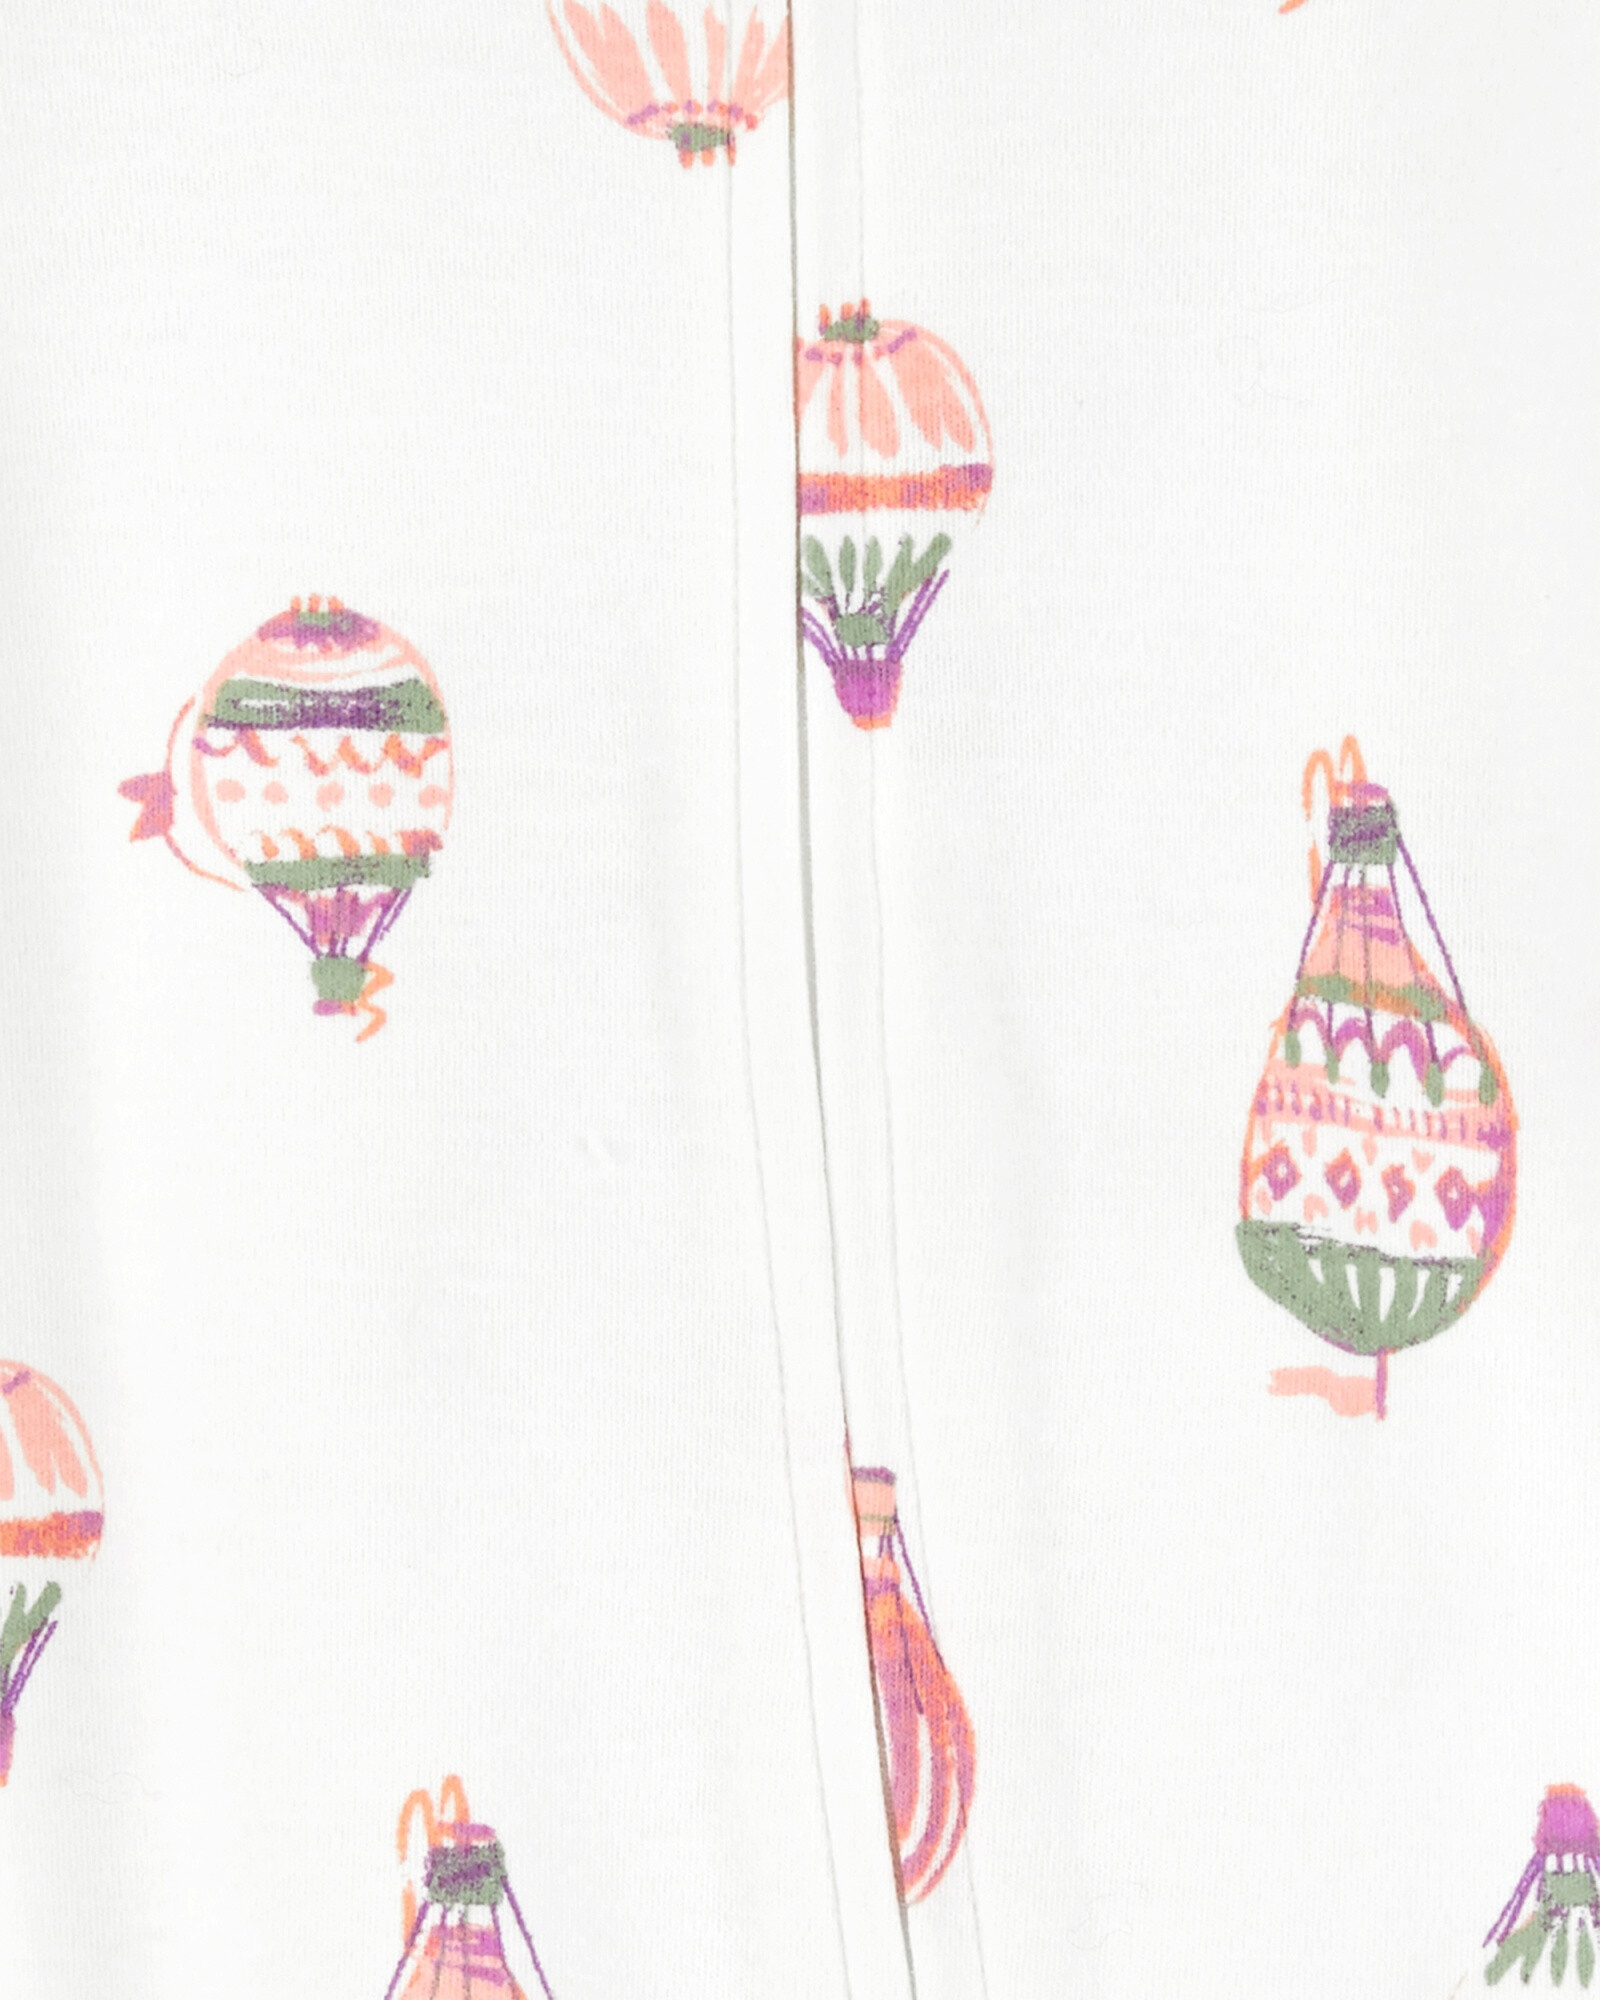 Pijama una pieza de algodón con pie, diseño globo Sin color